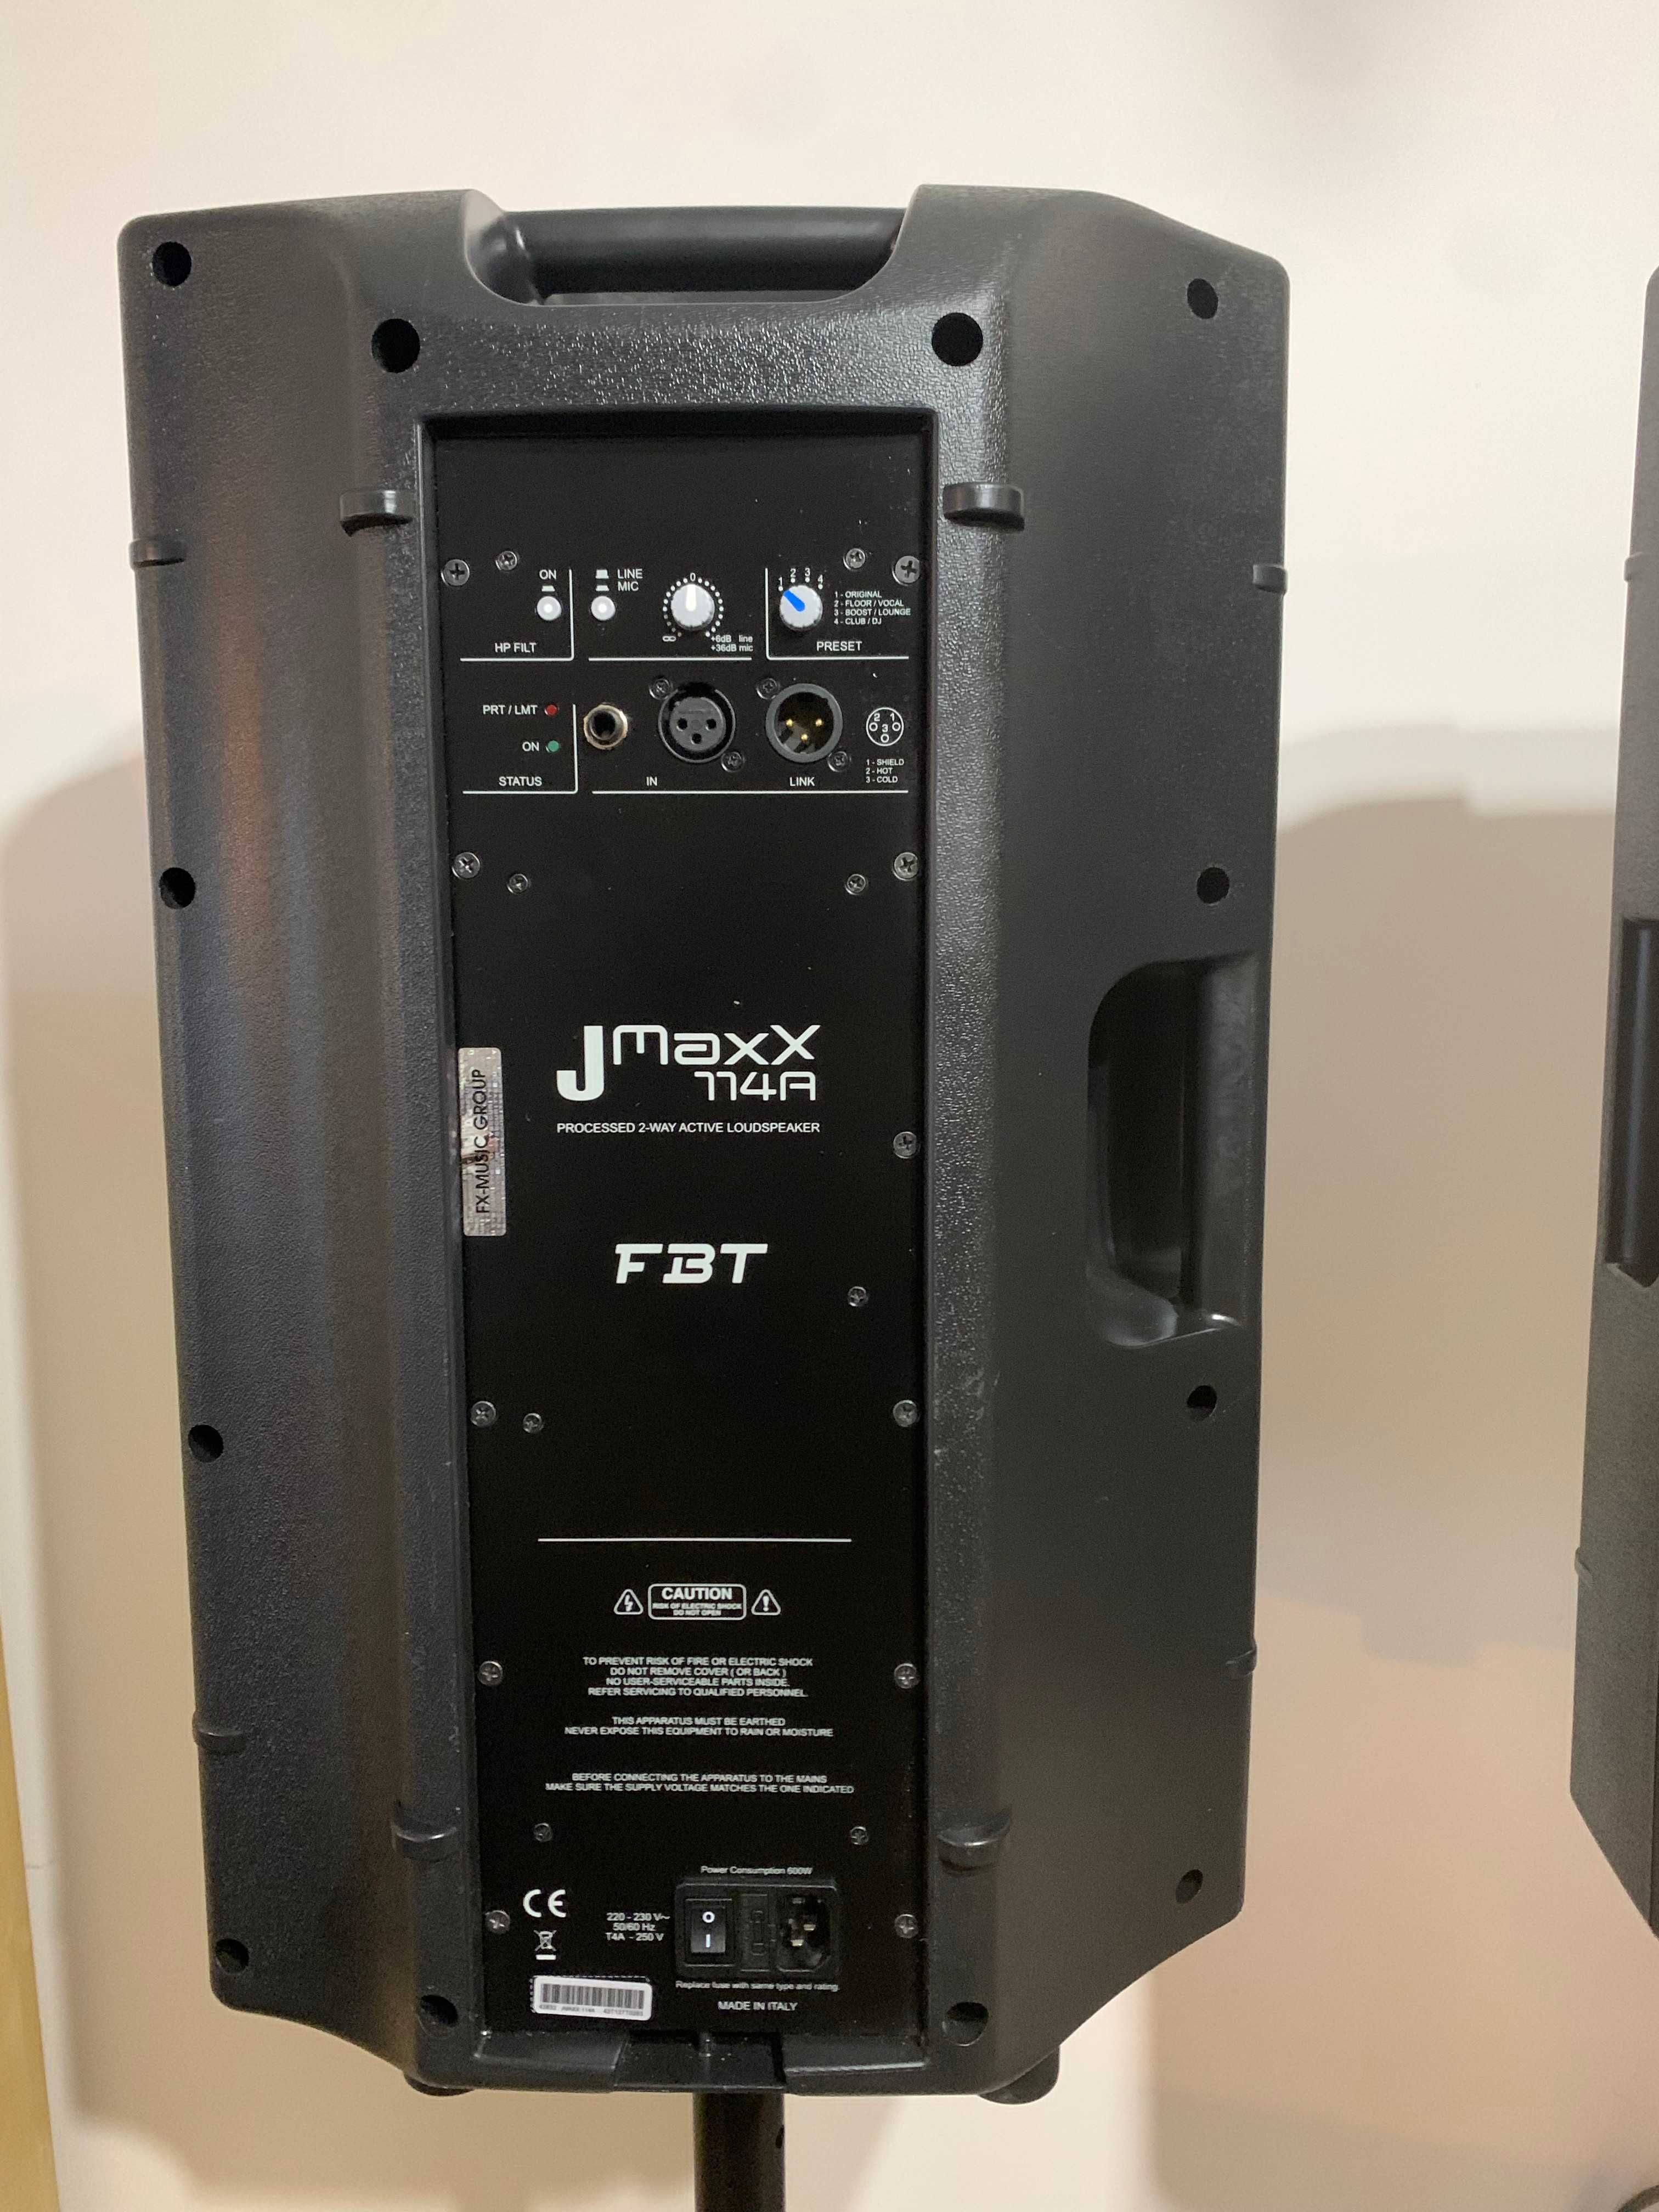 FBT jmaxx 114a/rcf/jbl/electrovoice